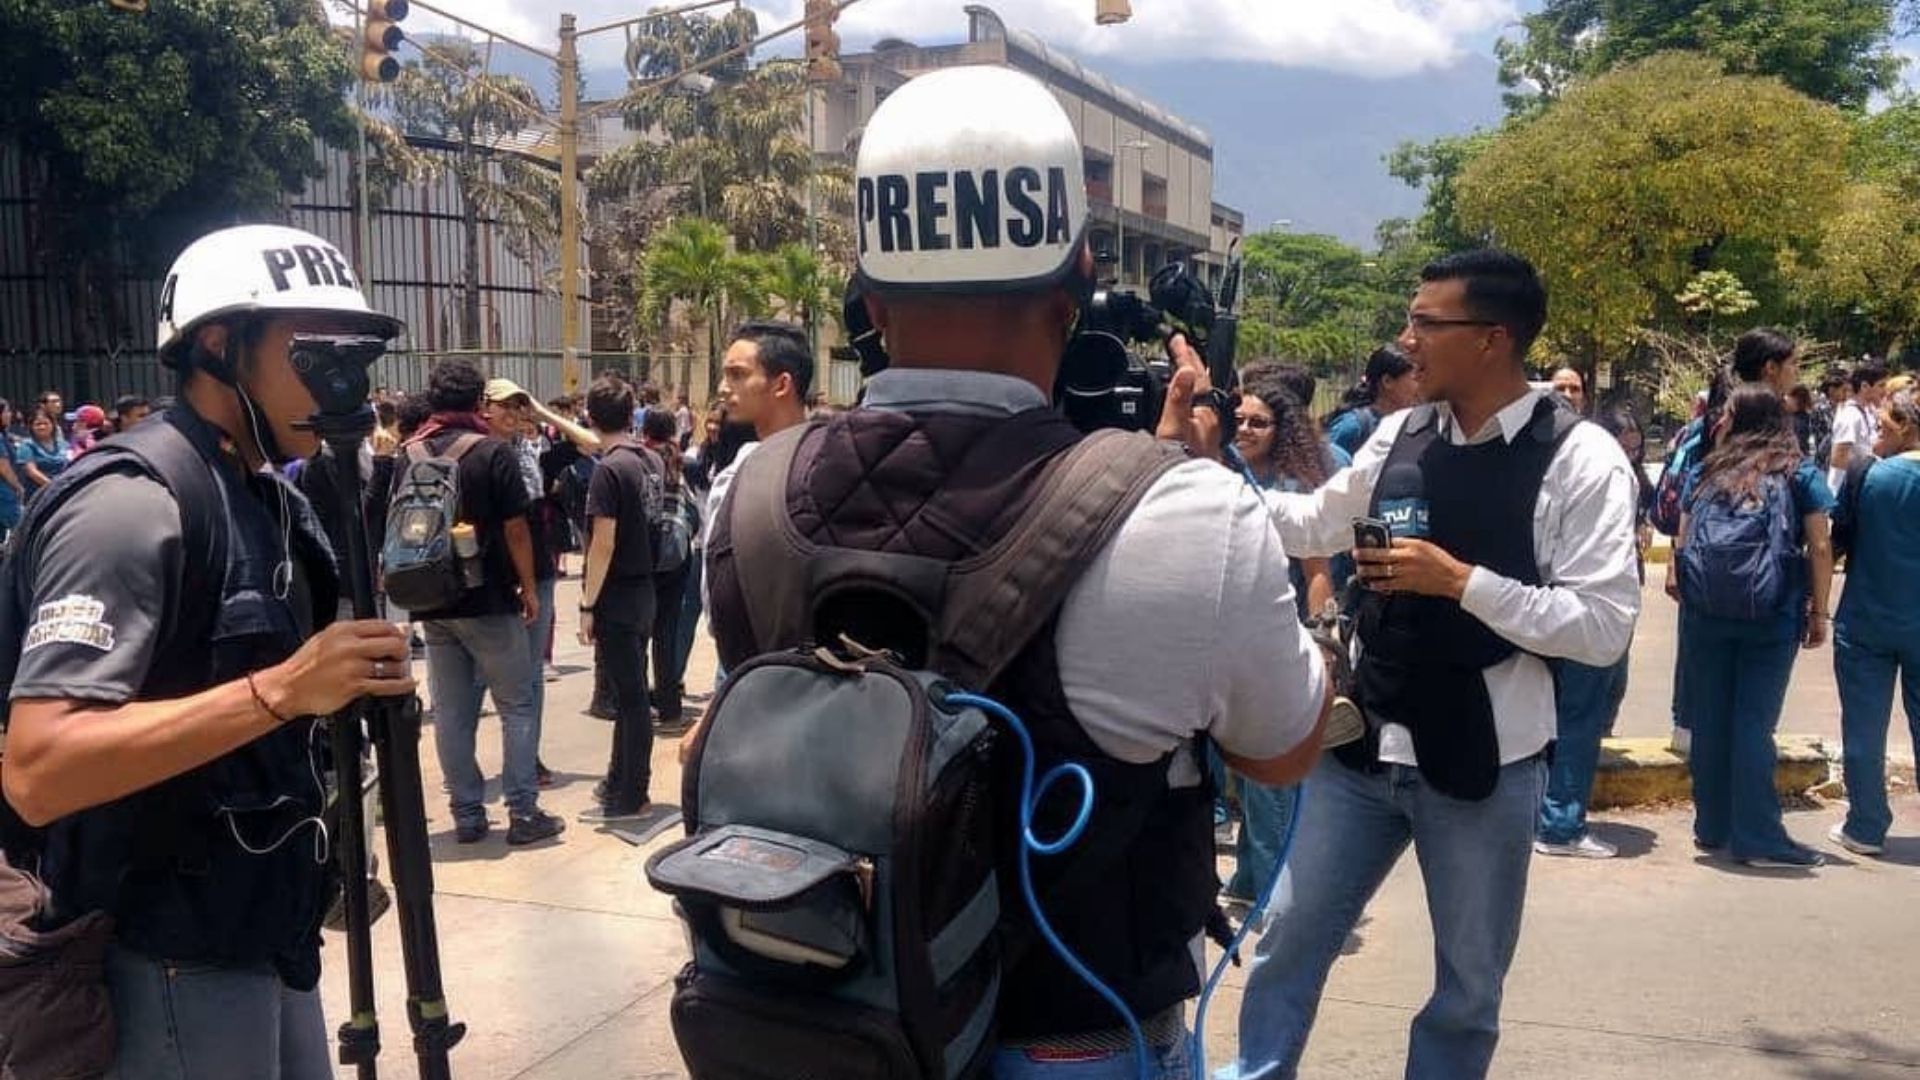 El venezolano está huérfano de información de acuerdo con Medianálisis